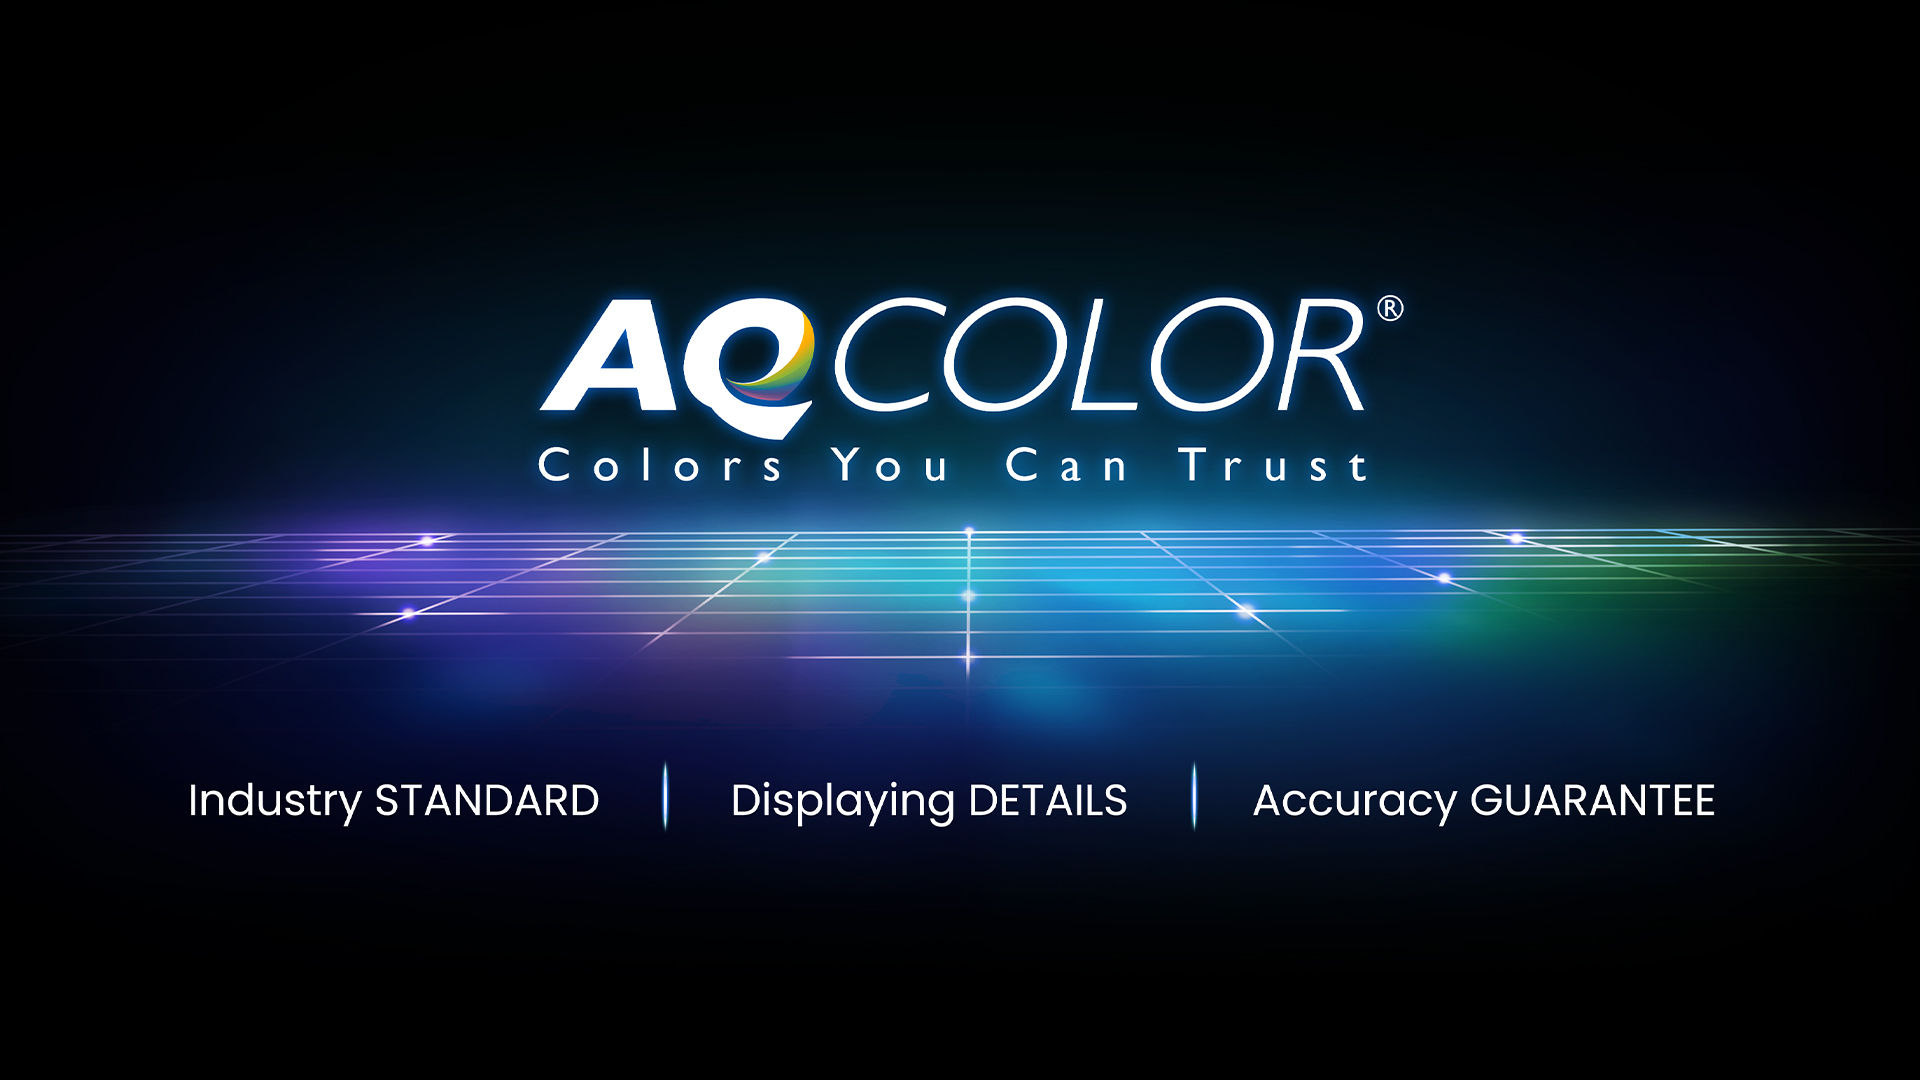 Manfaat Warna yang Akurat bagi Kreator BenQ menghadirkan teknologi AQCOLOR bagi profesional kreatif untuk membantu menginspirasi dan menghidupkan ide.